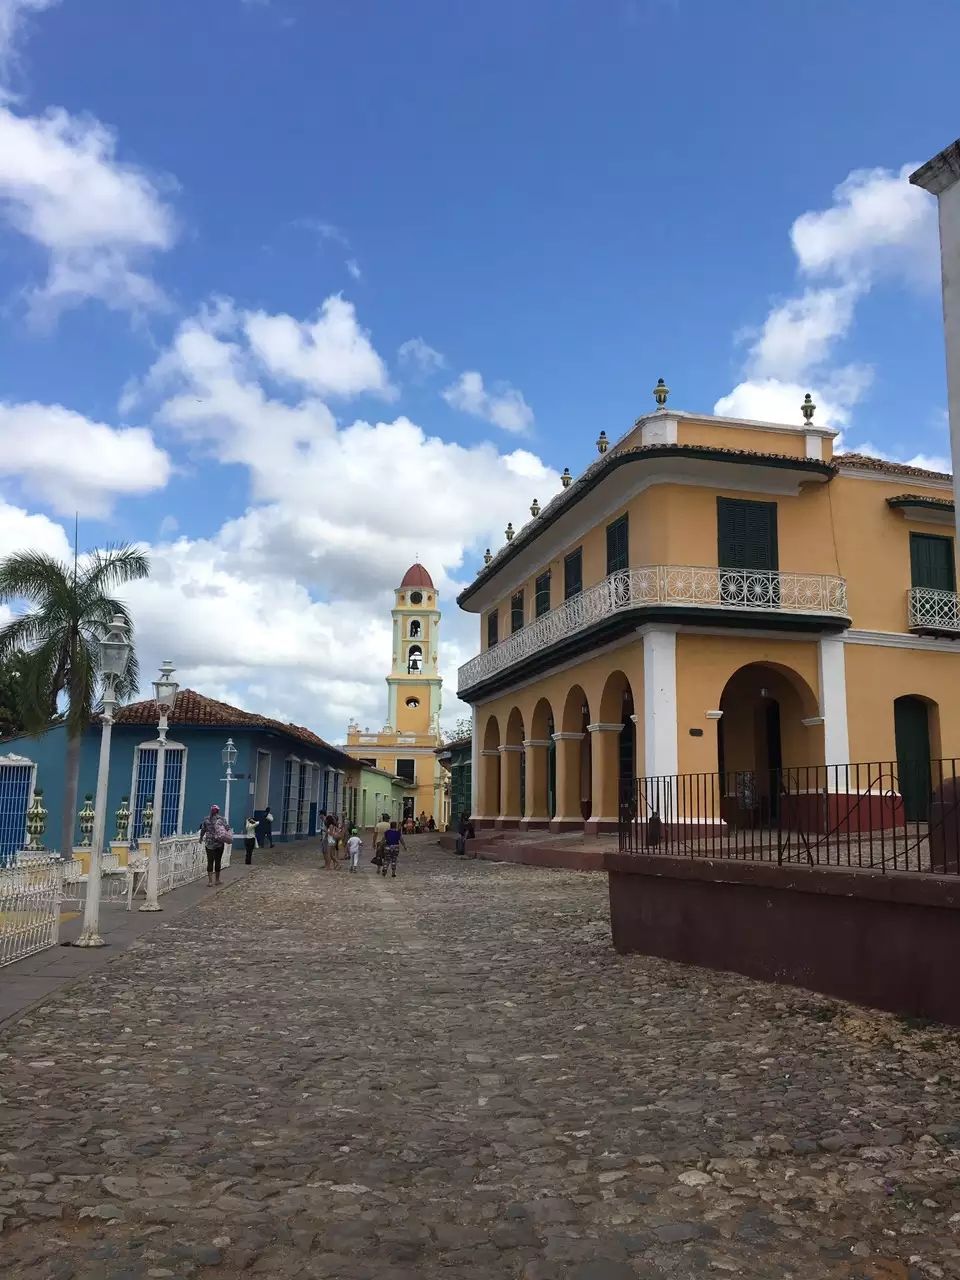 古巴🇨🇺老爷车文明于世 特立尼达老城也凭着街头巷尾无处不在的鲜明色彩吸引各地游客～ 这建筑还被印在货